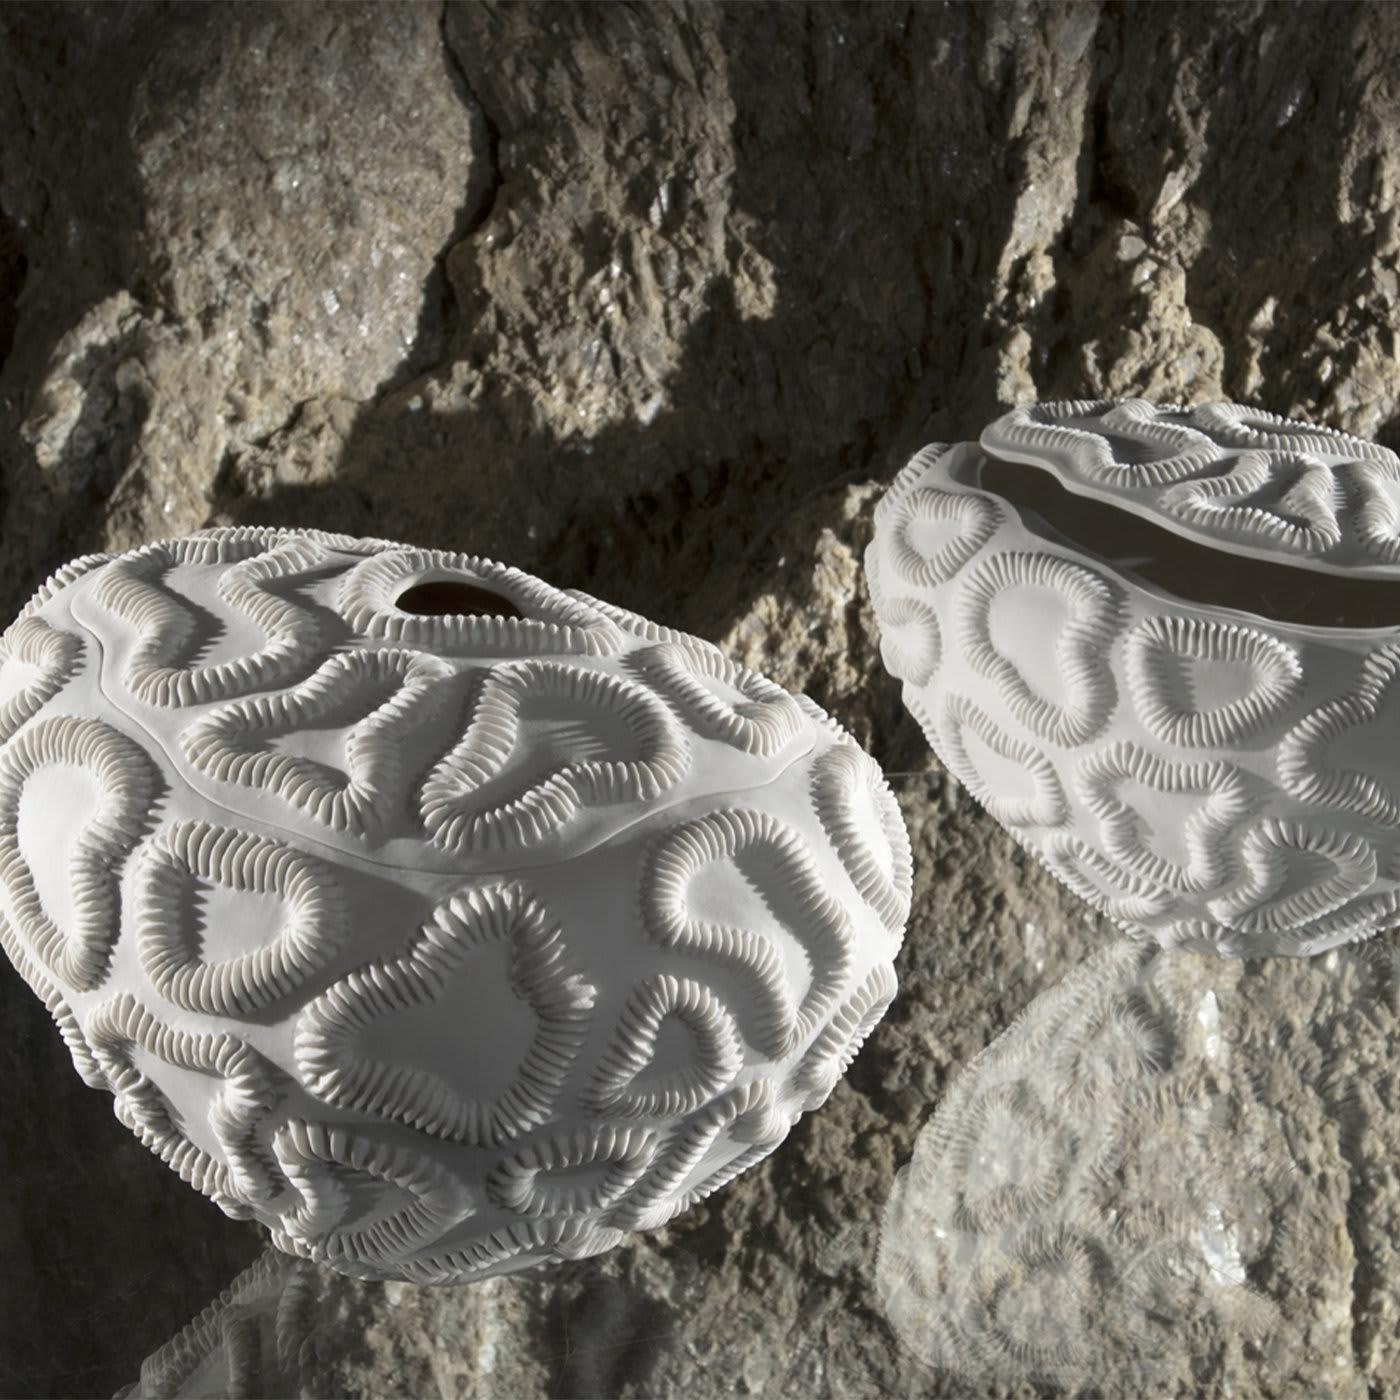 Le bol blanc Lithos présente une texture glorieuse avec des formes ressemblant à des fossiles qui recouvrent la surface. Doté d'une belle composition, d'une forme parfaite et d'un couvercle amovible, le bol constitue un ajout élégant à tout décor de